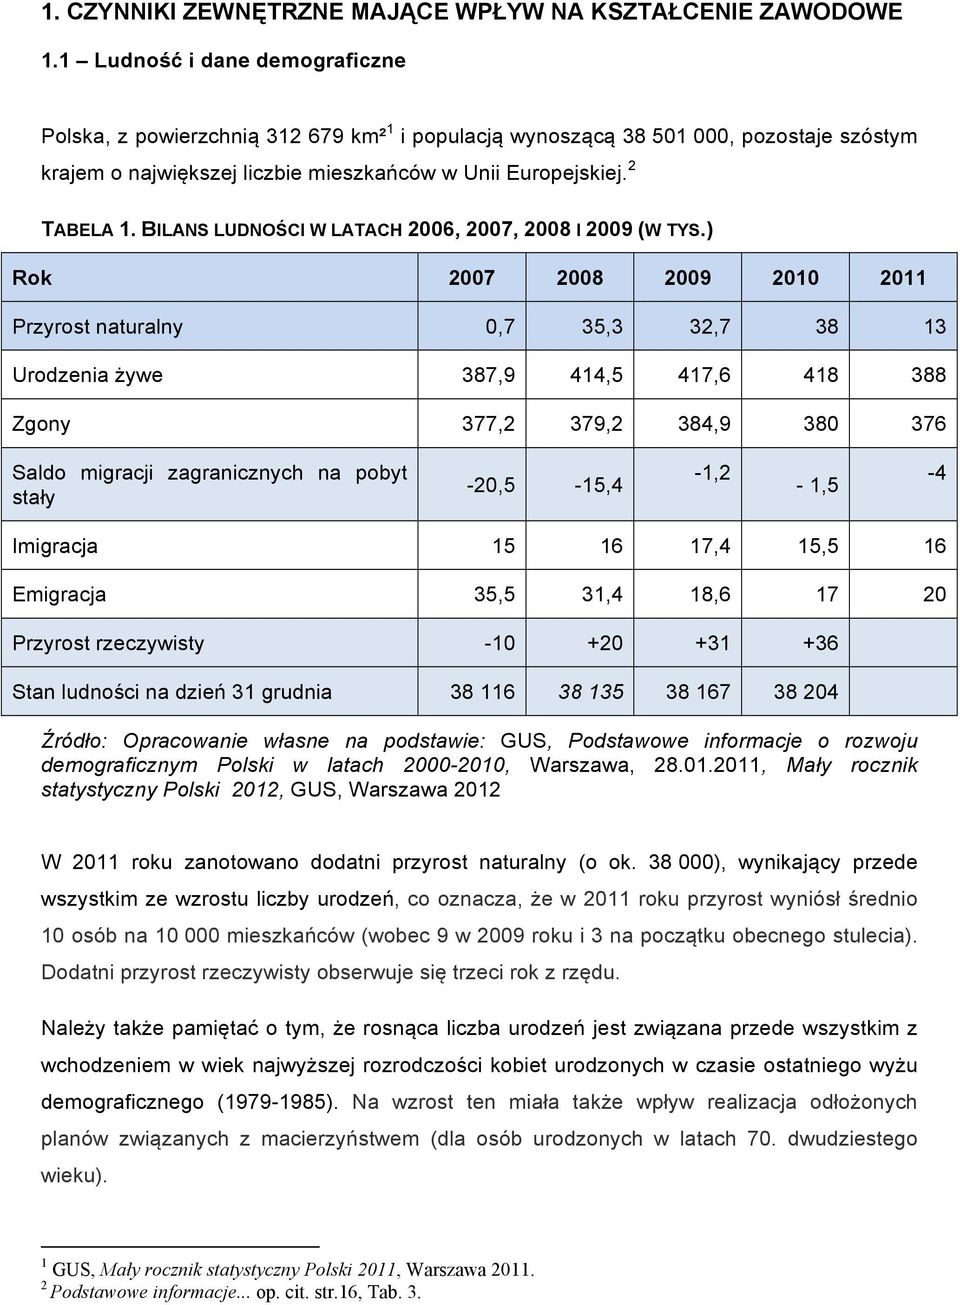 BILANS LUDNOŚCI W LATACH 2006, 2007, 2008 I 2009 (W TYS.